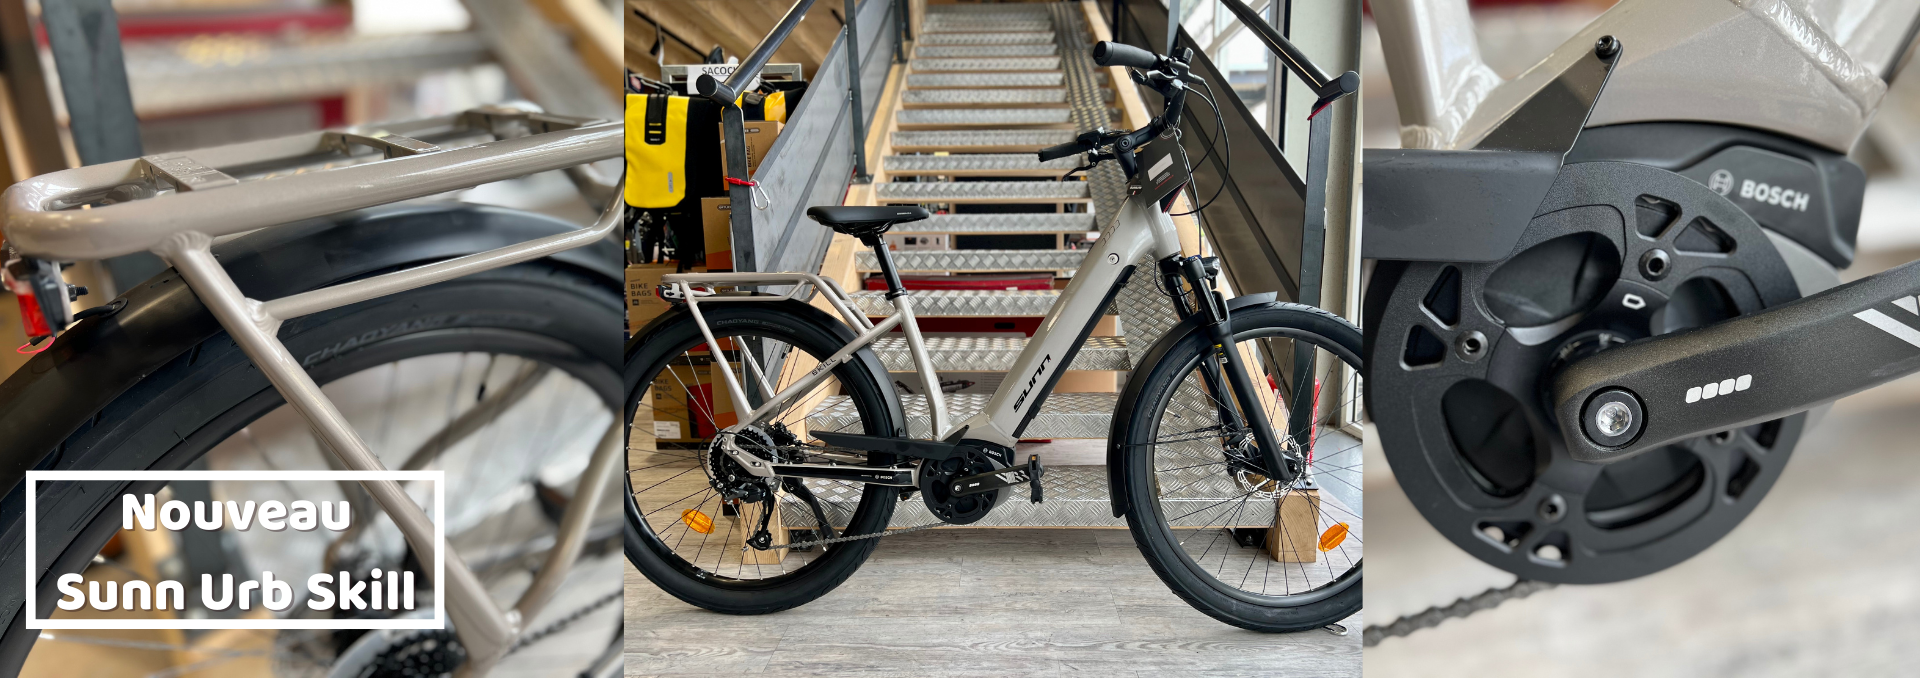 Le nouveau vélo électrique Sunn Urb Skill